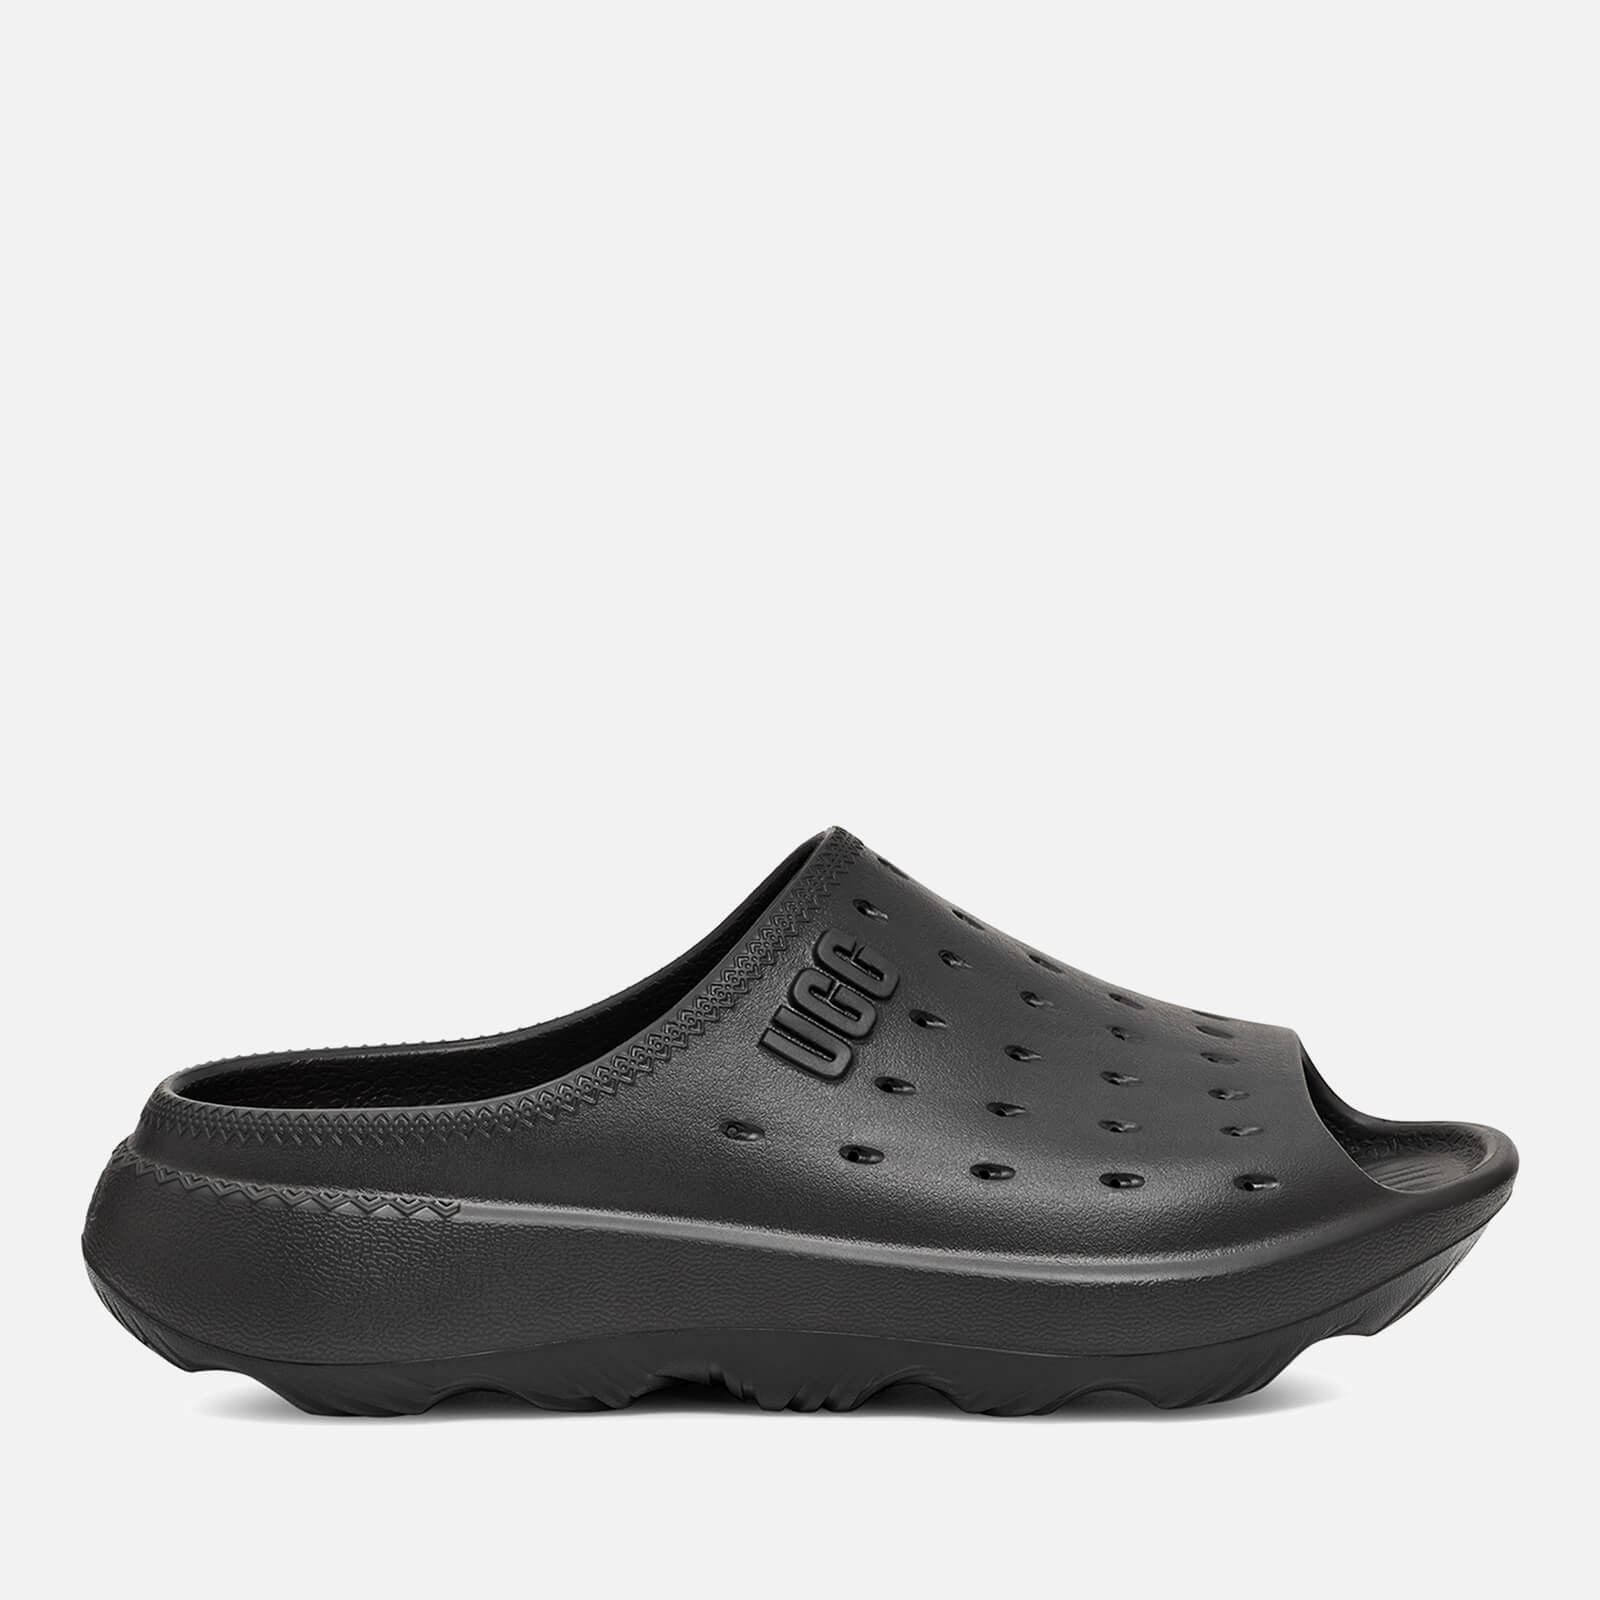 UGG Men's Slide It EVA Sandals